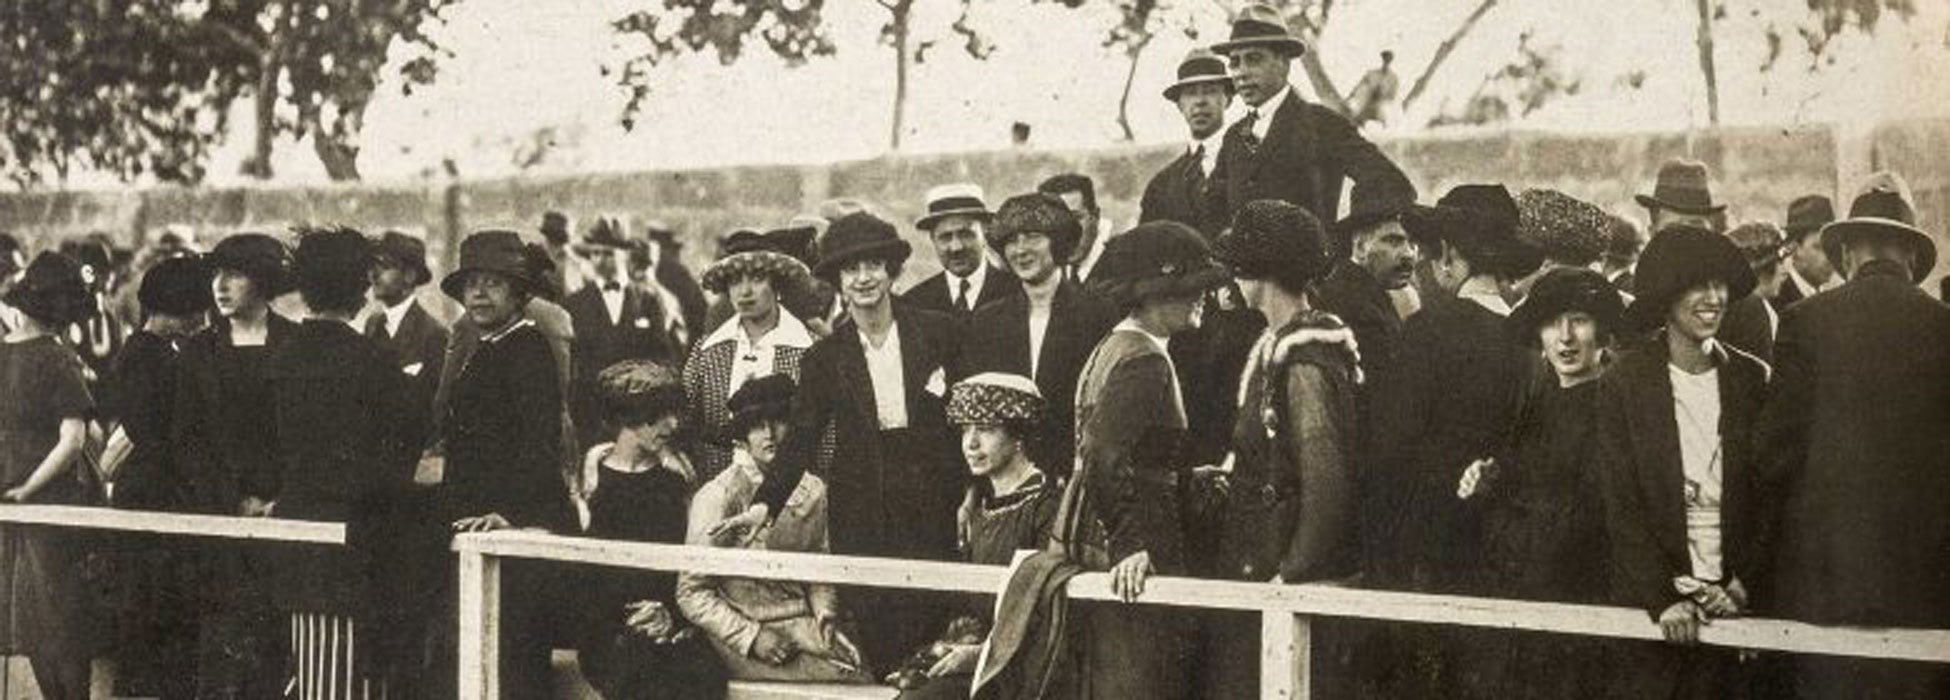 Palma en 1900. La revolución social y demográfica del siglo XX